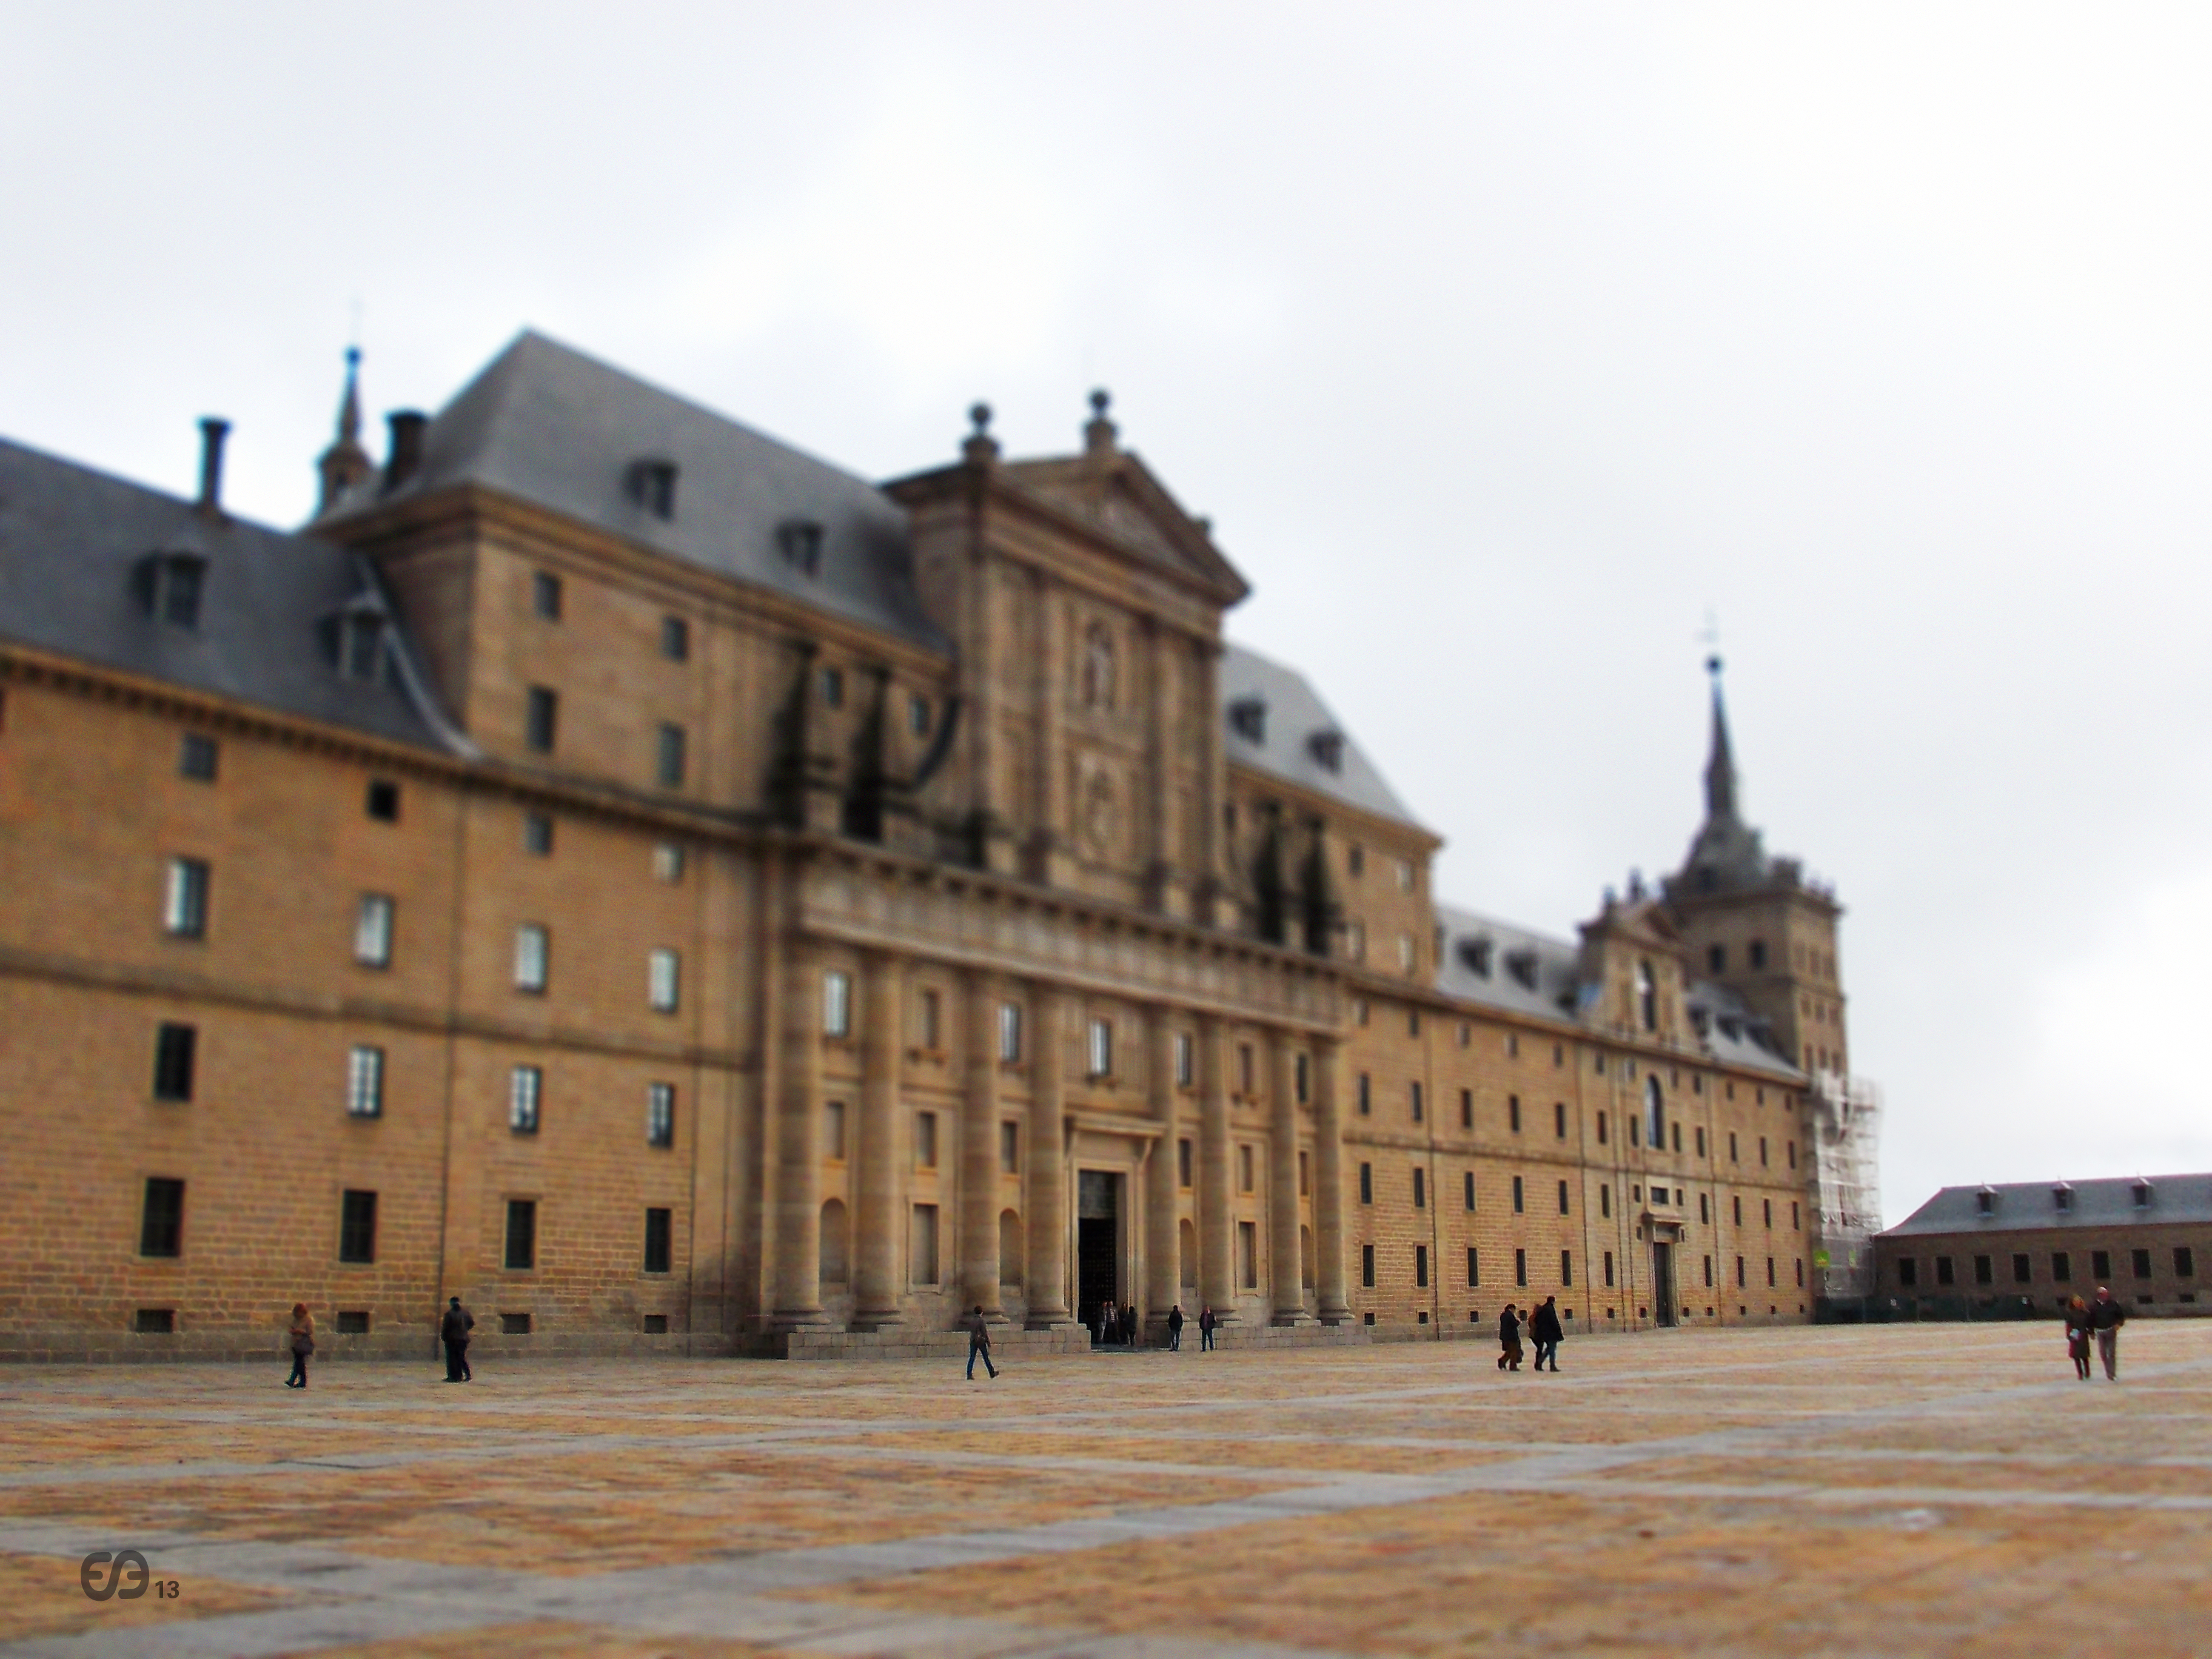 El monasterio de El Escorial con la técnica de tilt-shift